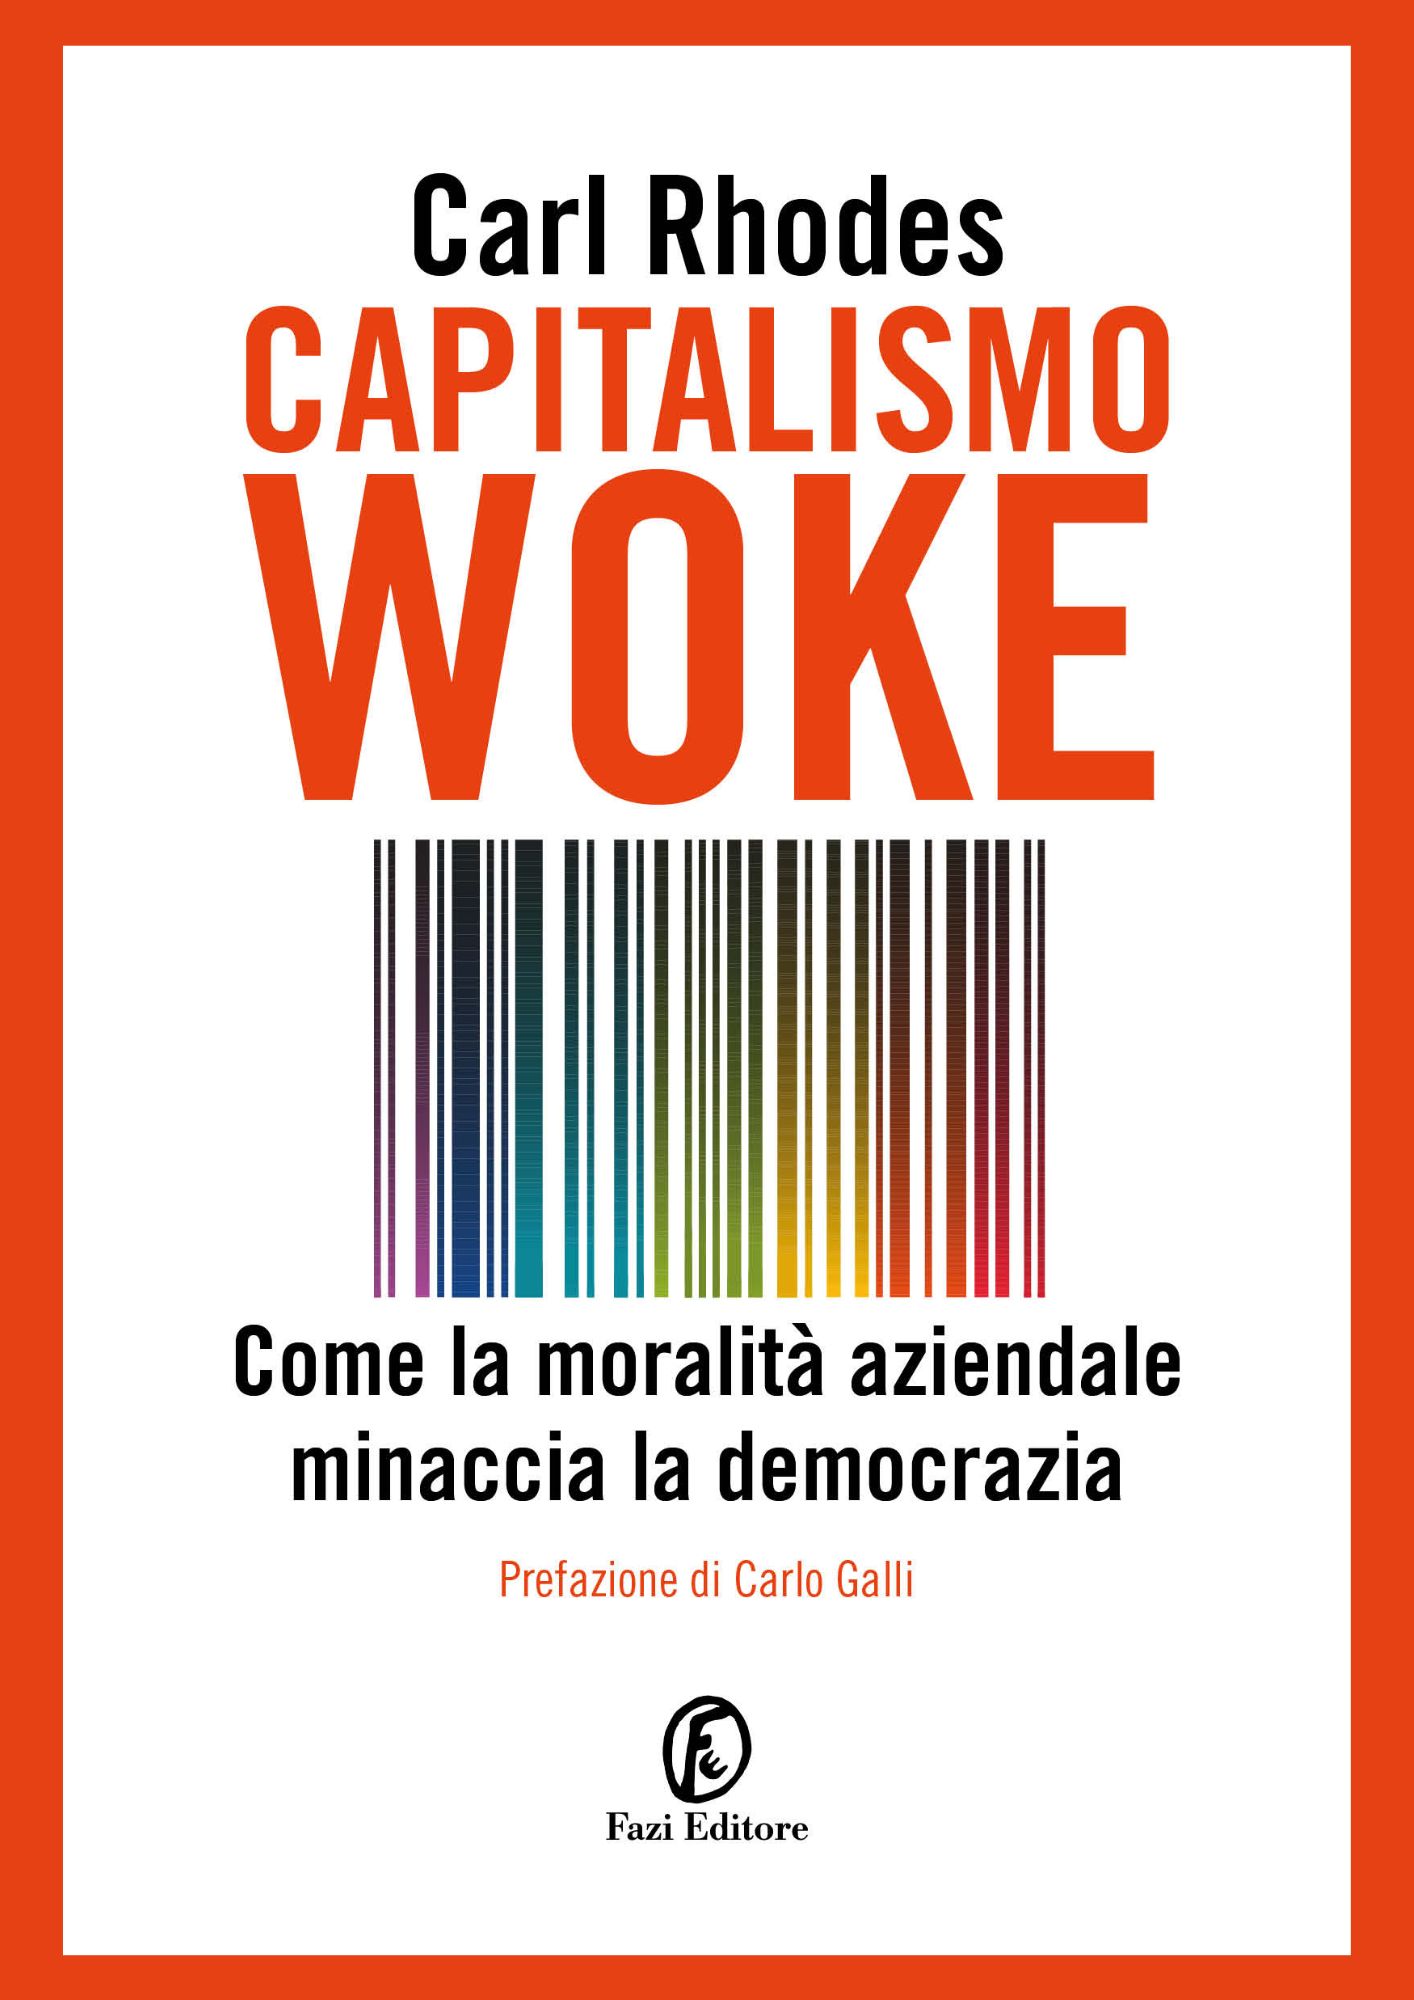 Capitalismo Woke (Carl Rodhes)